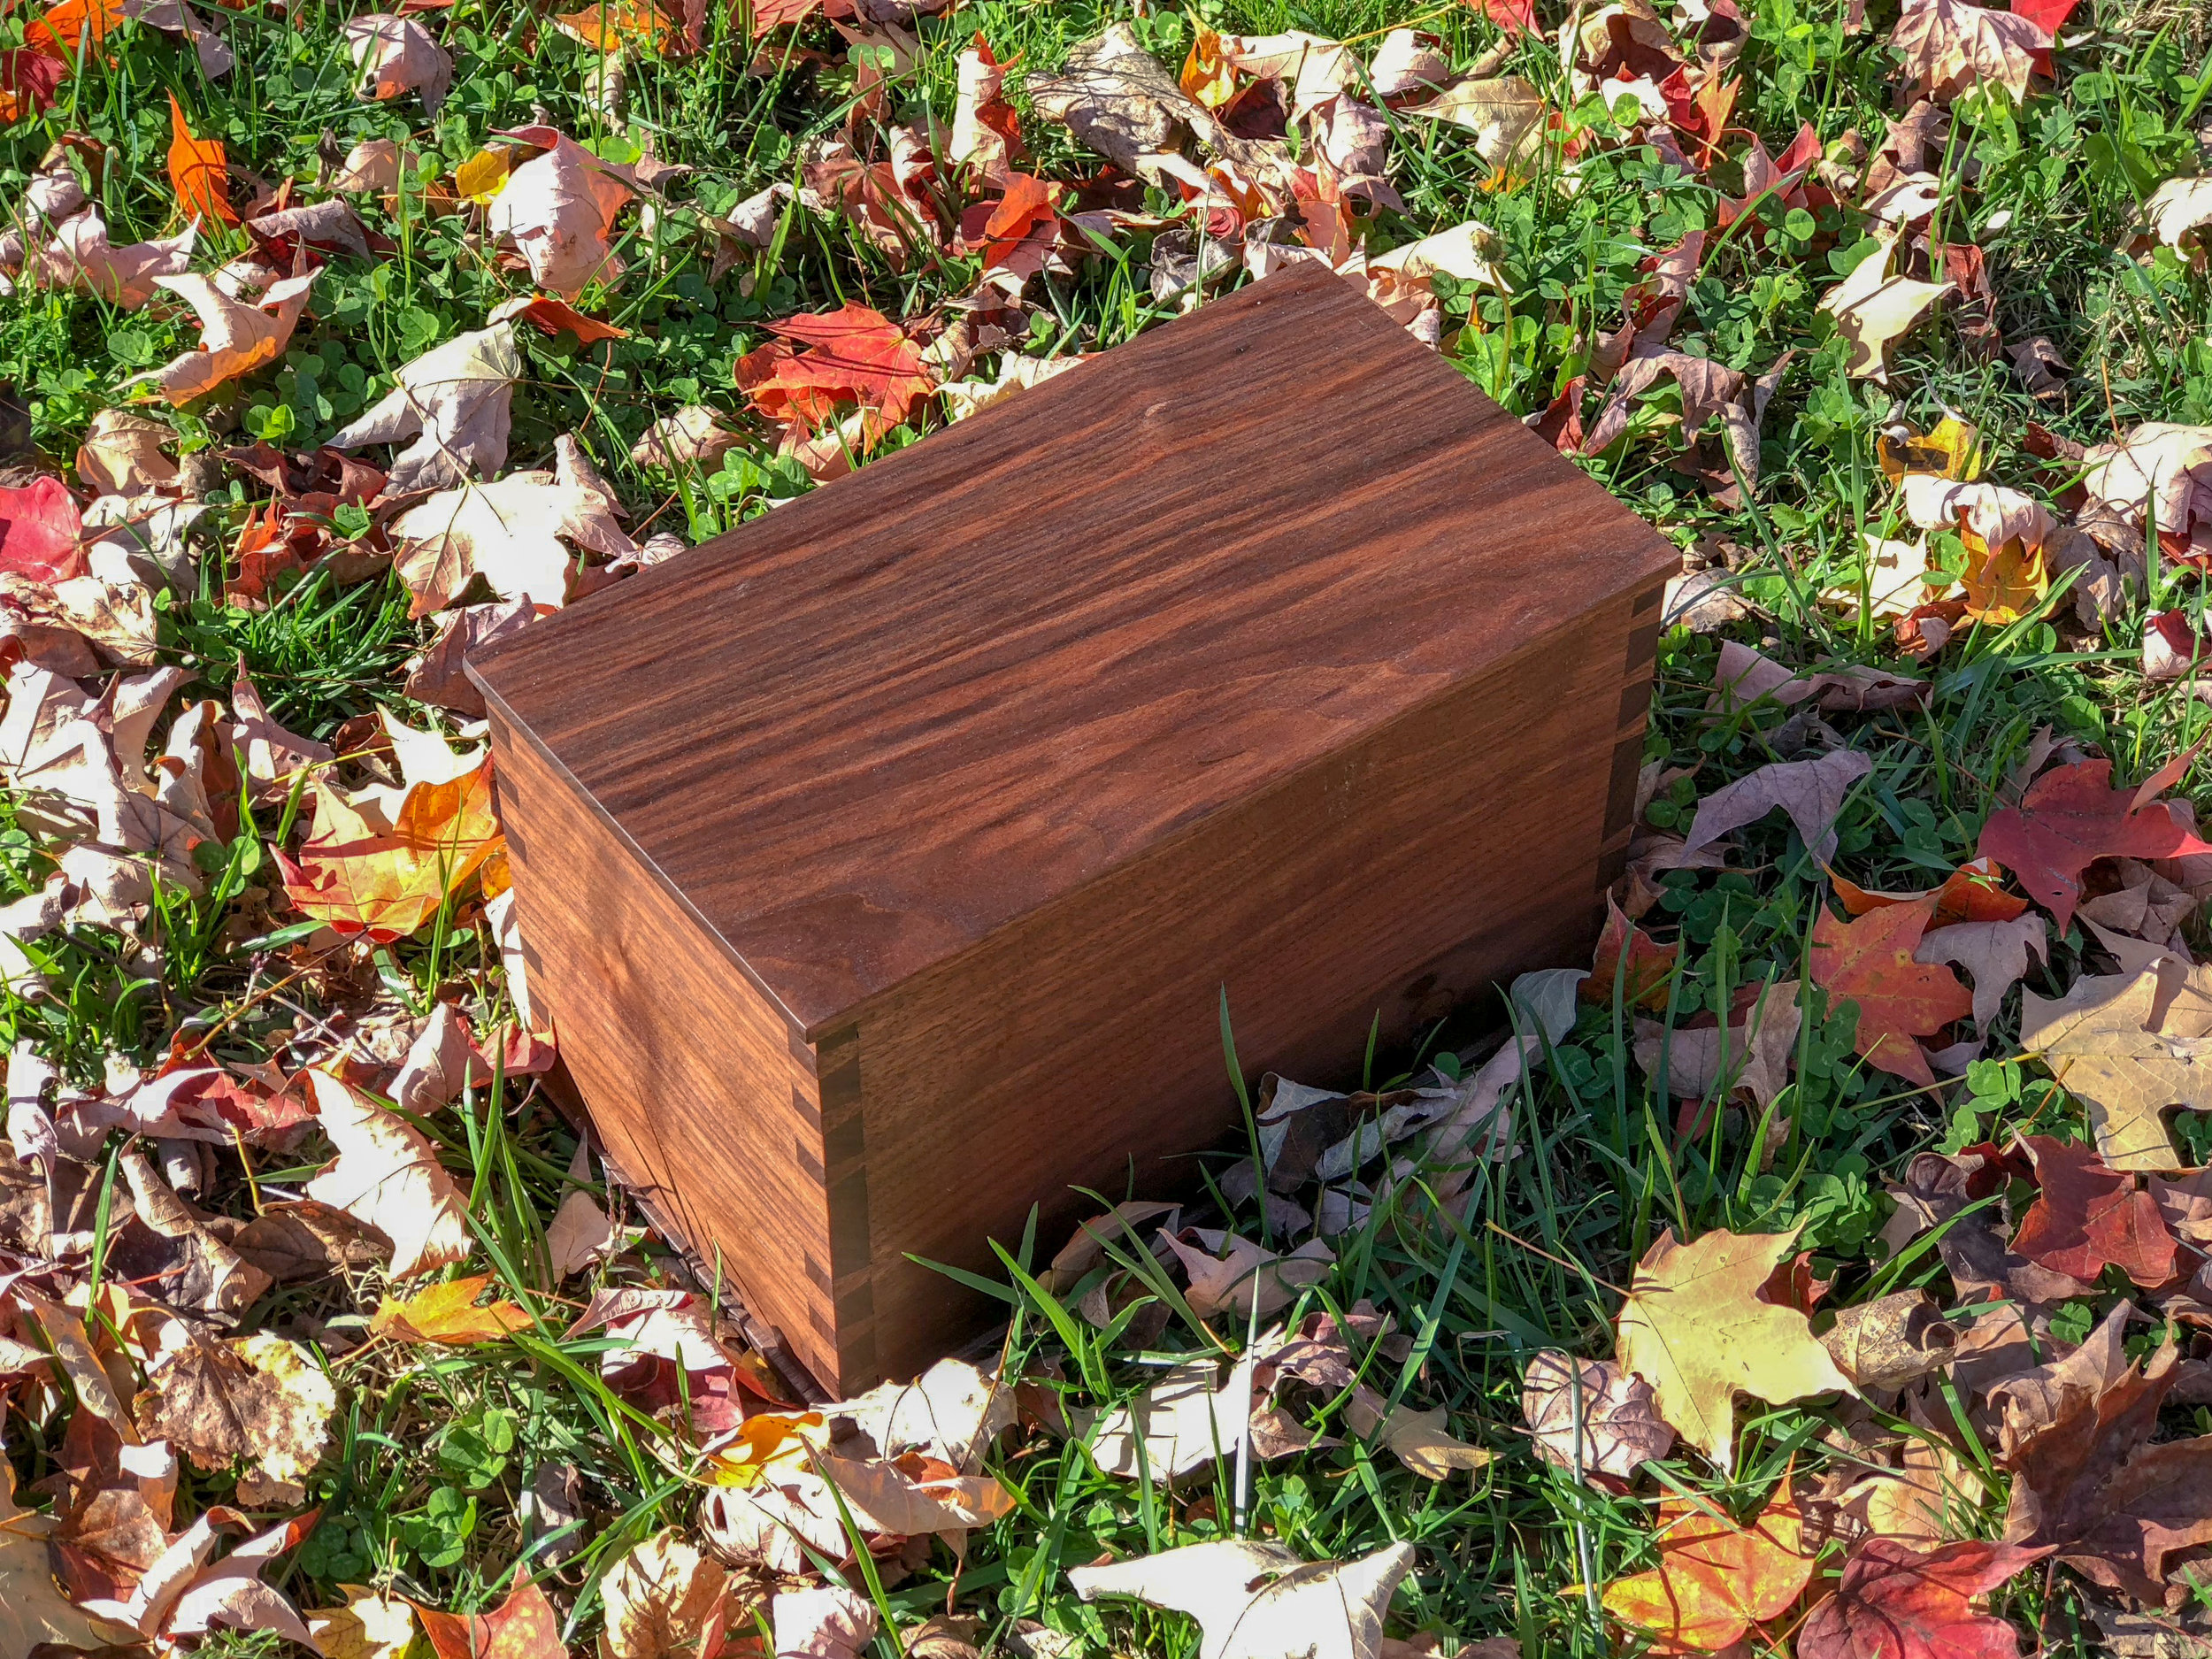 Wooden Cremation Urn. handmade wooden box. sallie plumley studio. richmond virginia